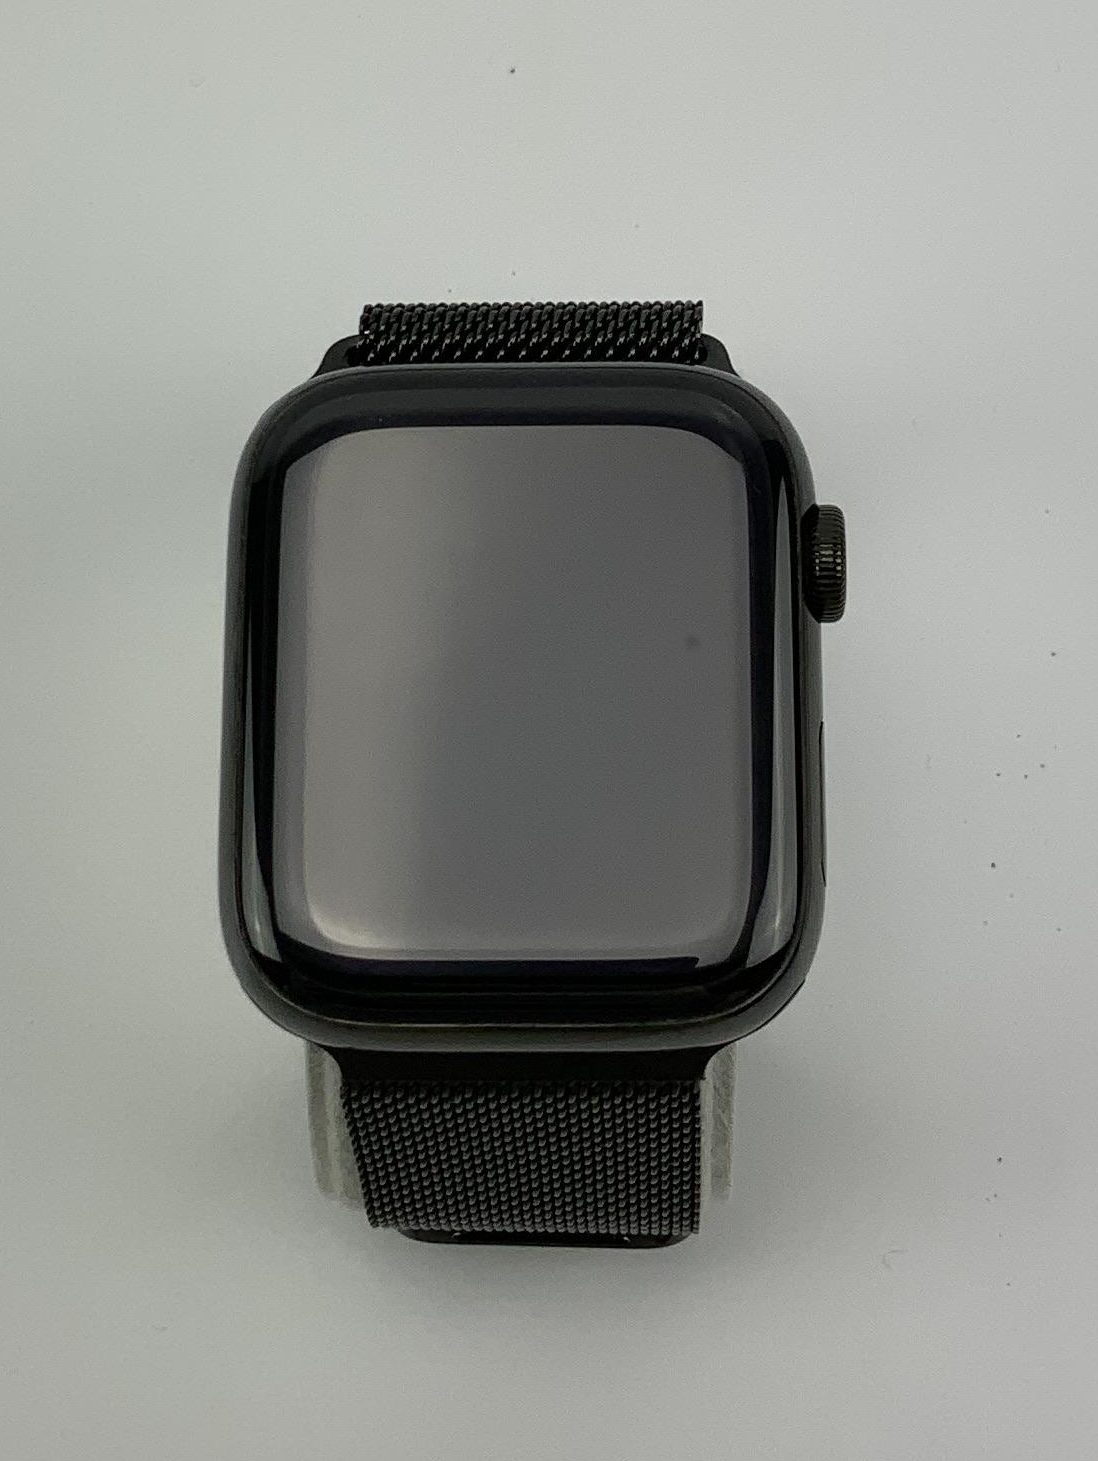 Watch Series 4 Steel Cellular (44mm), Space Black, Space Black Milanese Loop, Kuva 1